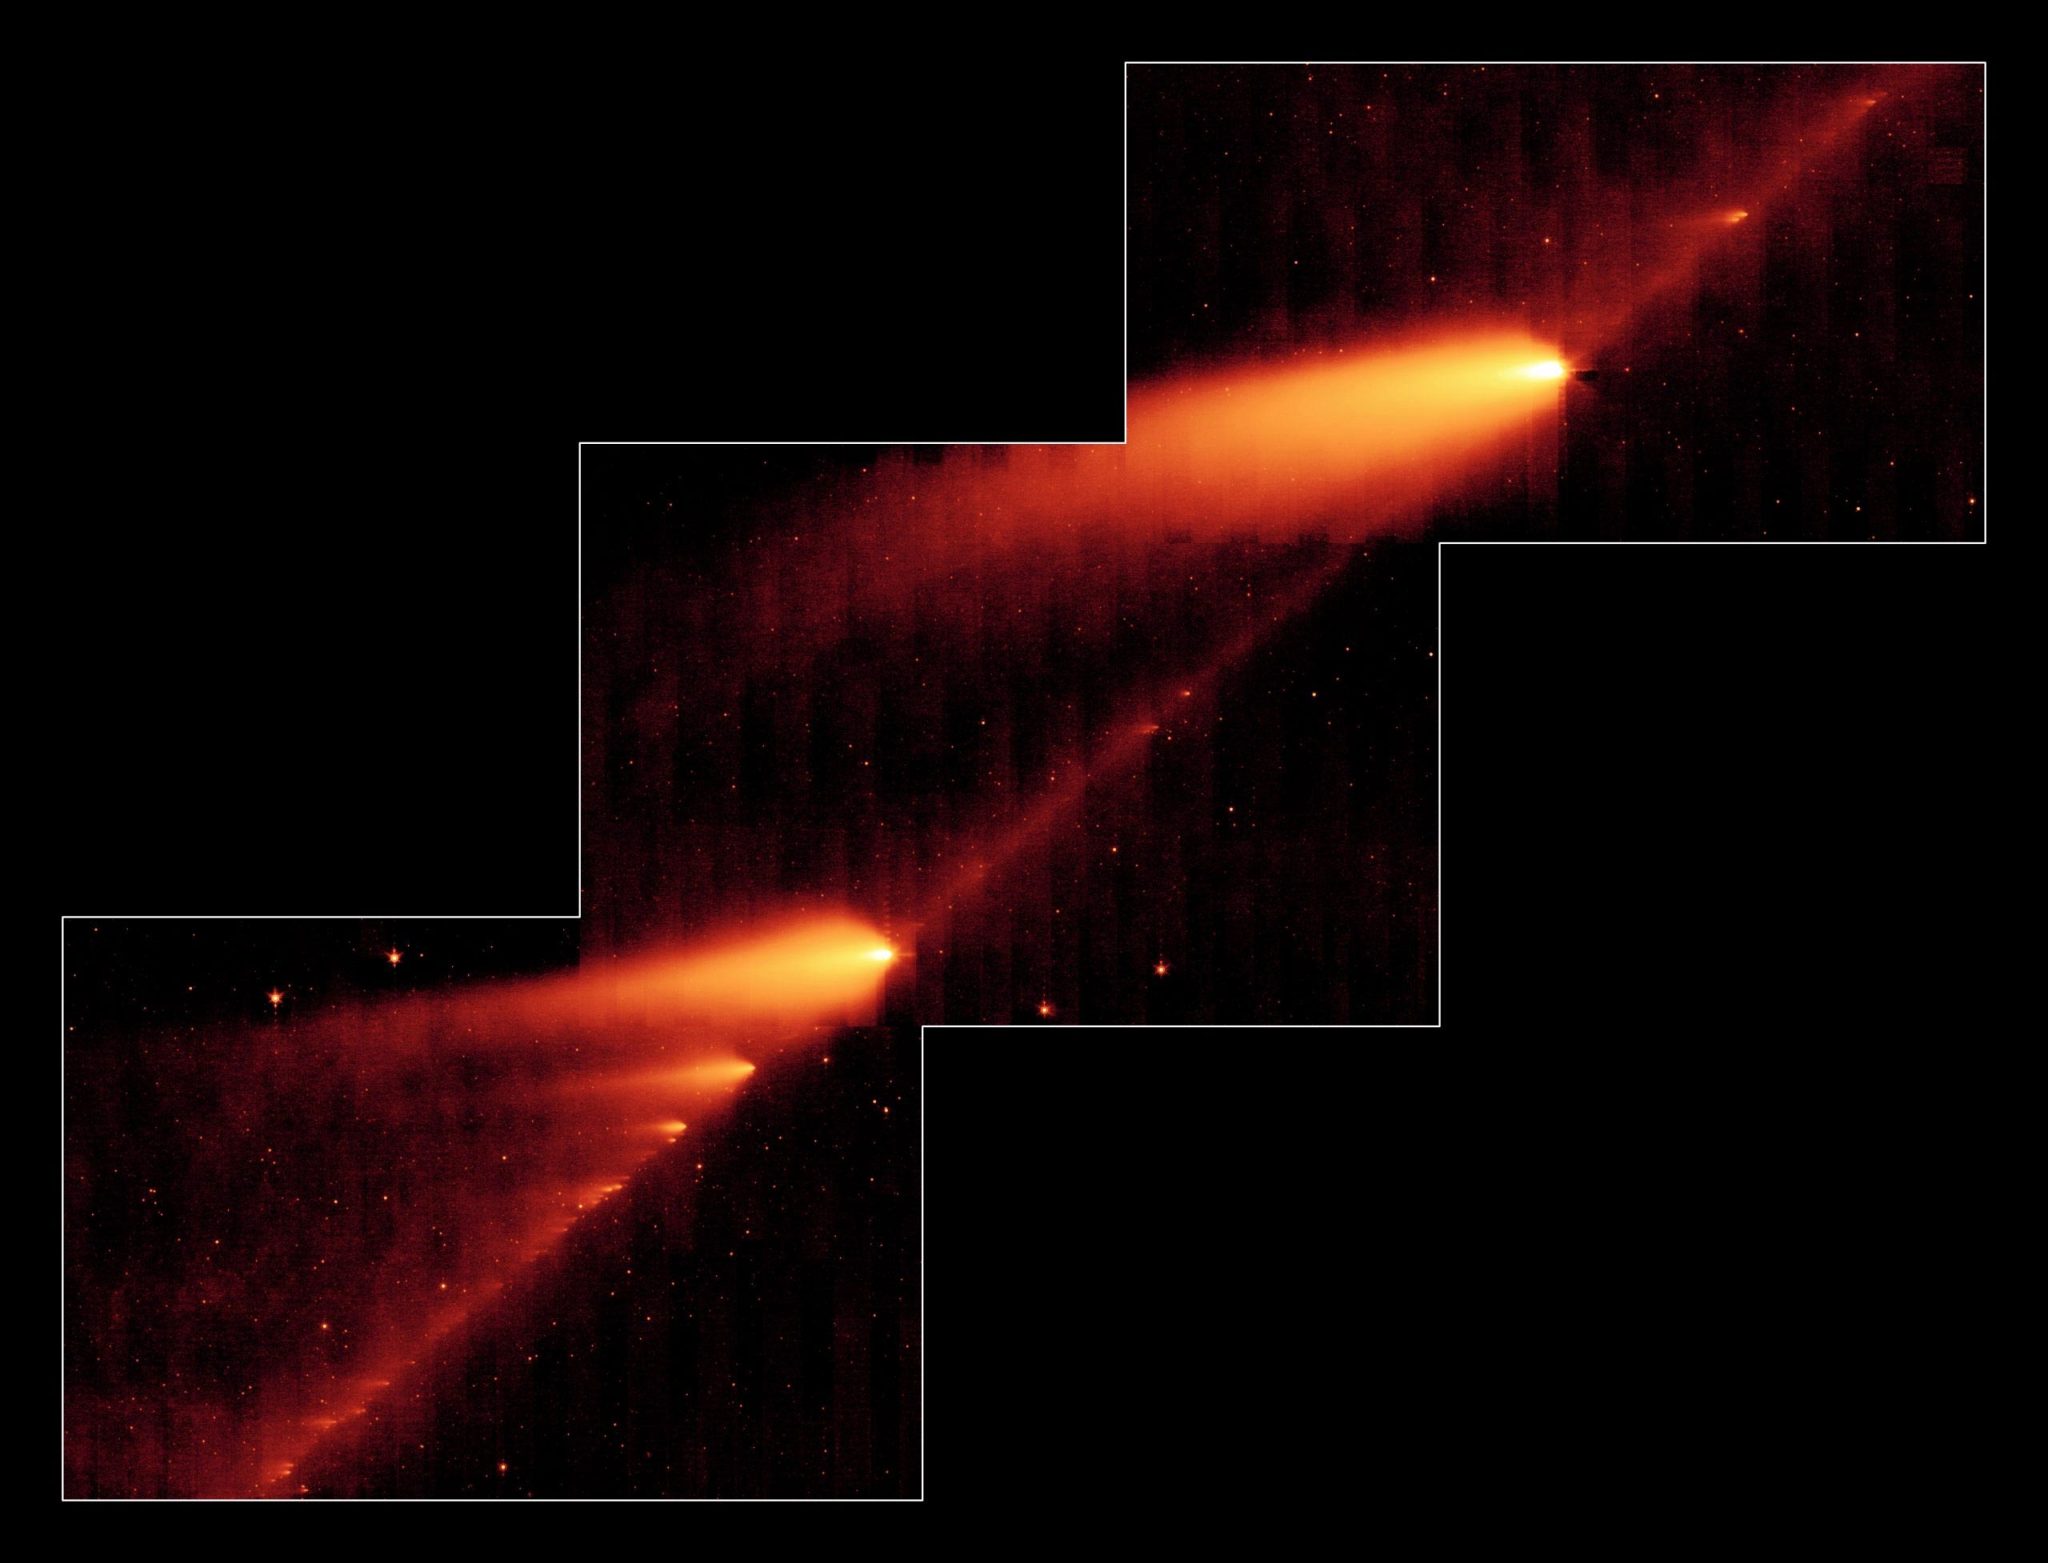 Shattered Comet 73P/Schwassman-Wachmann 3